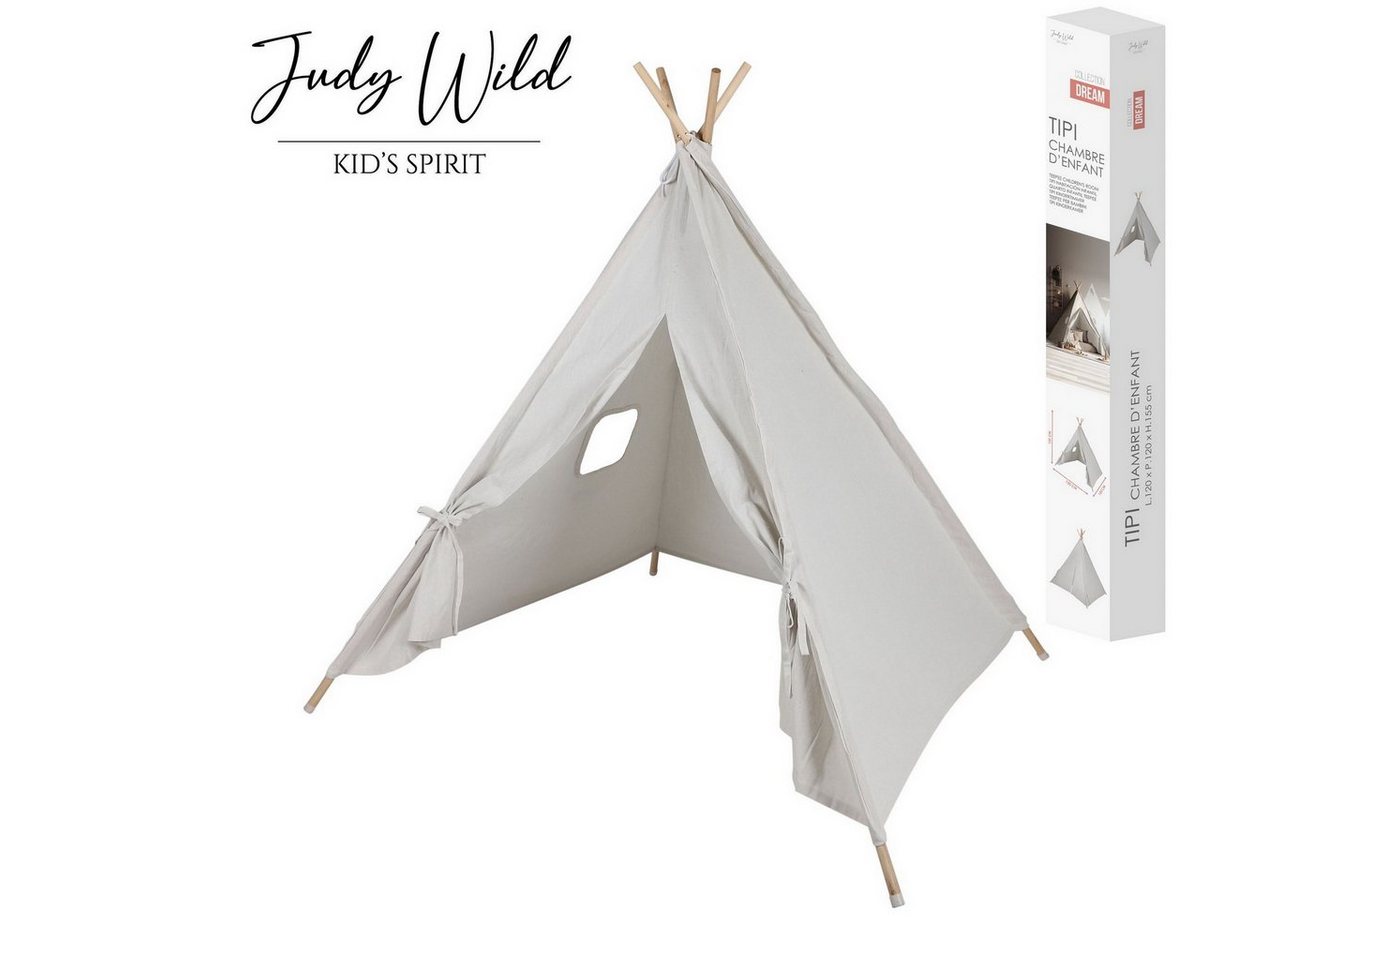 Judy Wild Tipi-Zelt Kinder Zelt Tipi Kinderzelt, (Gestell aus Eukalyptusholz, Stoff aus 60% Baumwolle, 40% Polyester, (LxBxH) 120 x 120 x 155 cm), mit kleinem Fenster, ab 24 Monate von Judy Wild